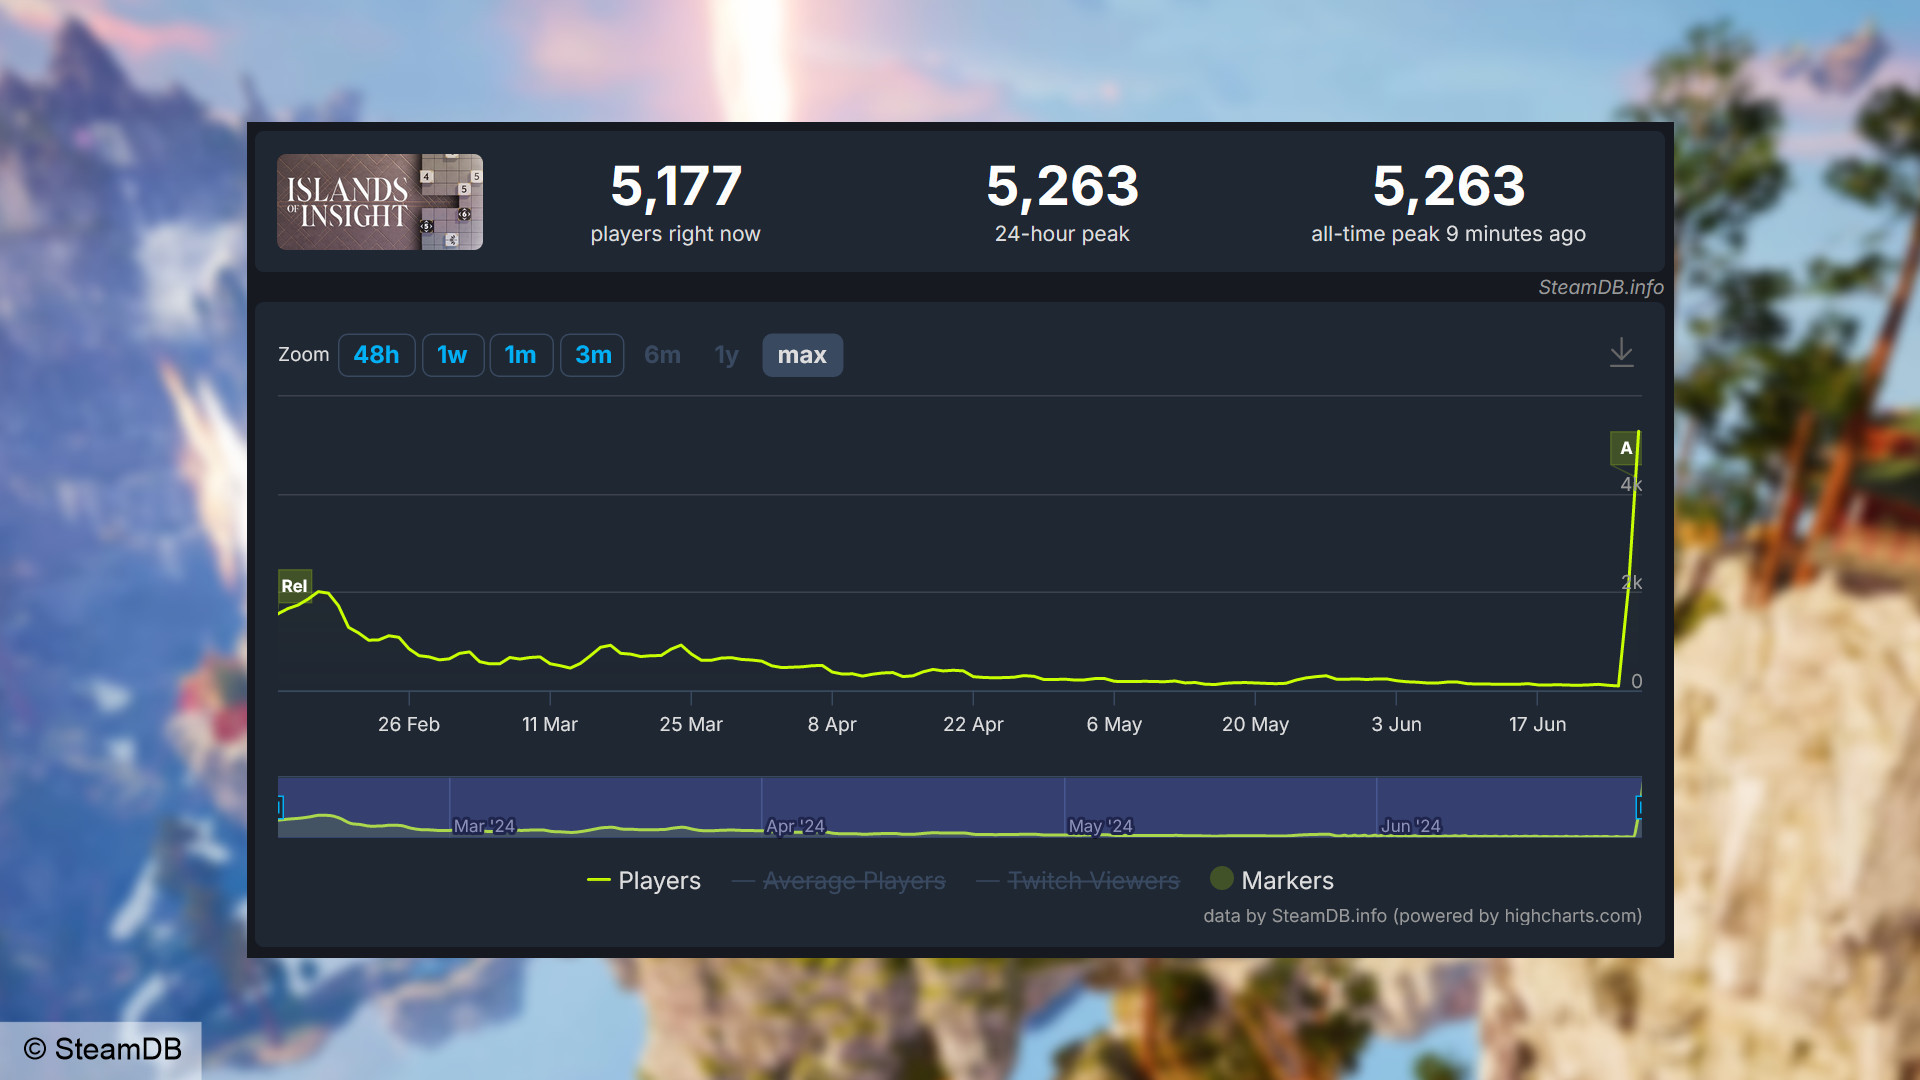 Islands of Insight Steam oyuncu sayısı - SteamDB'den alınan grafik, oyundaki 5.263 eş zamanlı kullanıcıdan oluşan yeni bir rekoru gösteriyor.